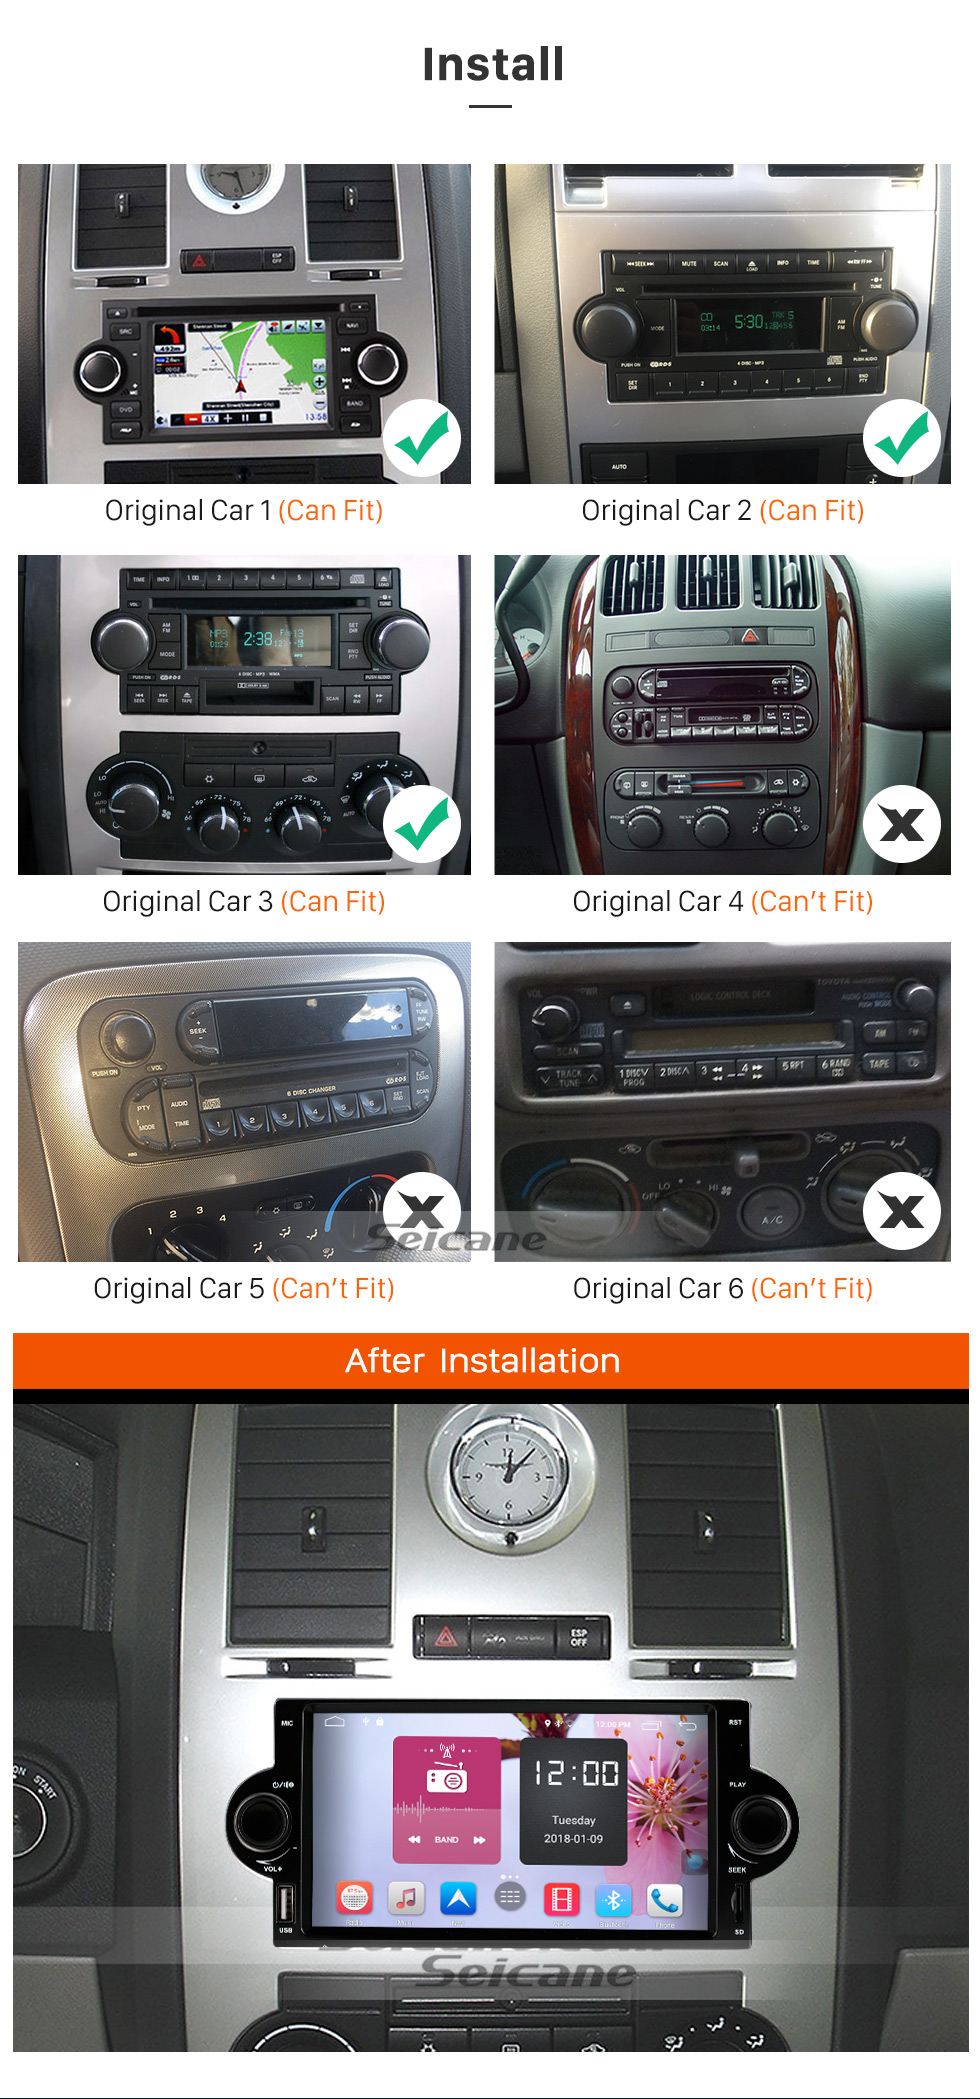 Seicane Aftermarket Android 8.1 Lecteur DVD Système de navigation GPS pour 2002-2007 Dodge Durango Dakota P/U avec OBD2 Bluetooth Radio Lien miroir Écran tactile DVR Caméra de recul TV USB SD 1080P Vidéo WIFI Commande au volant